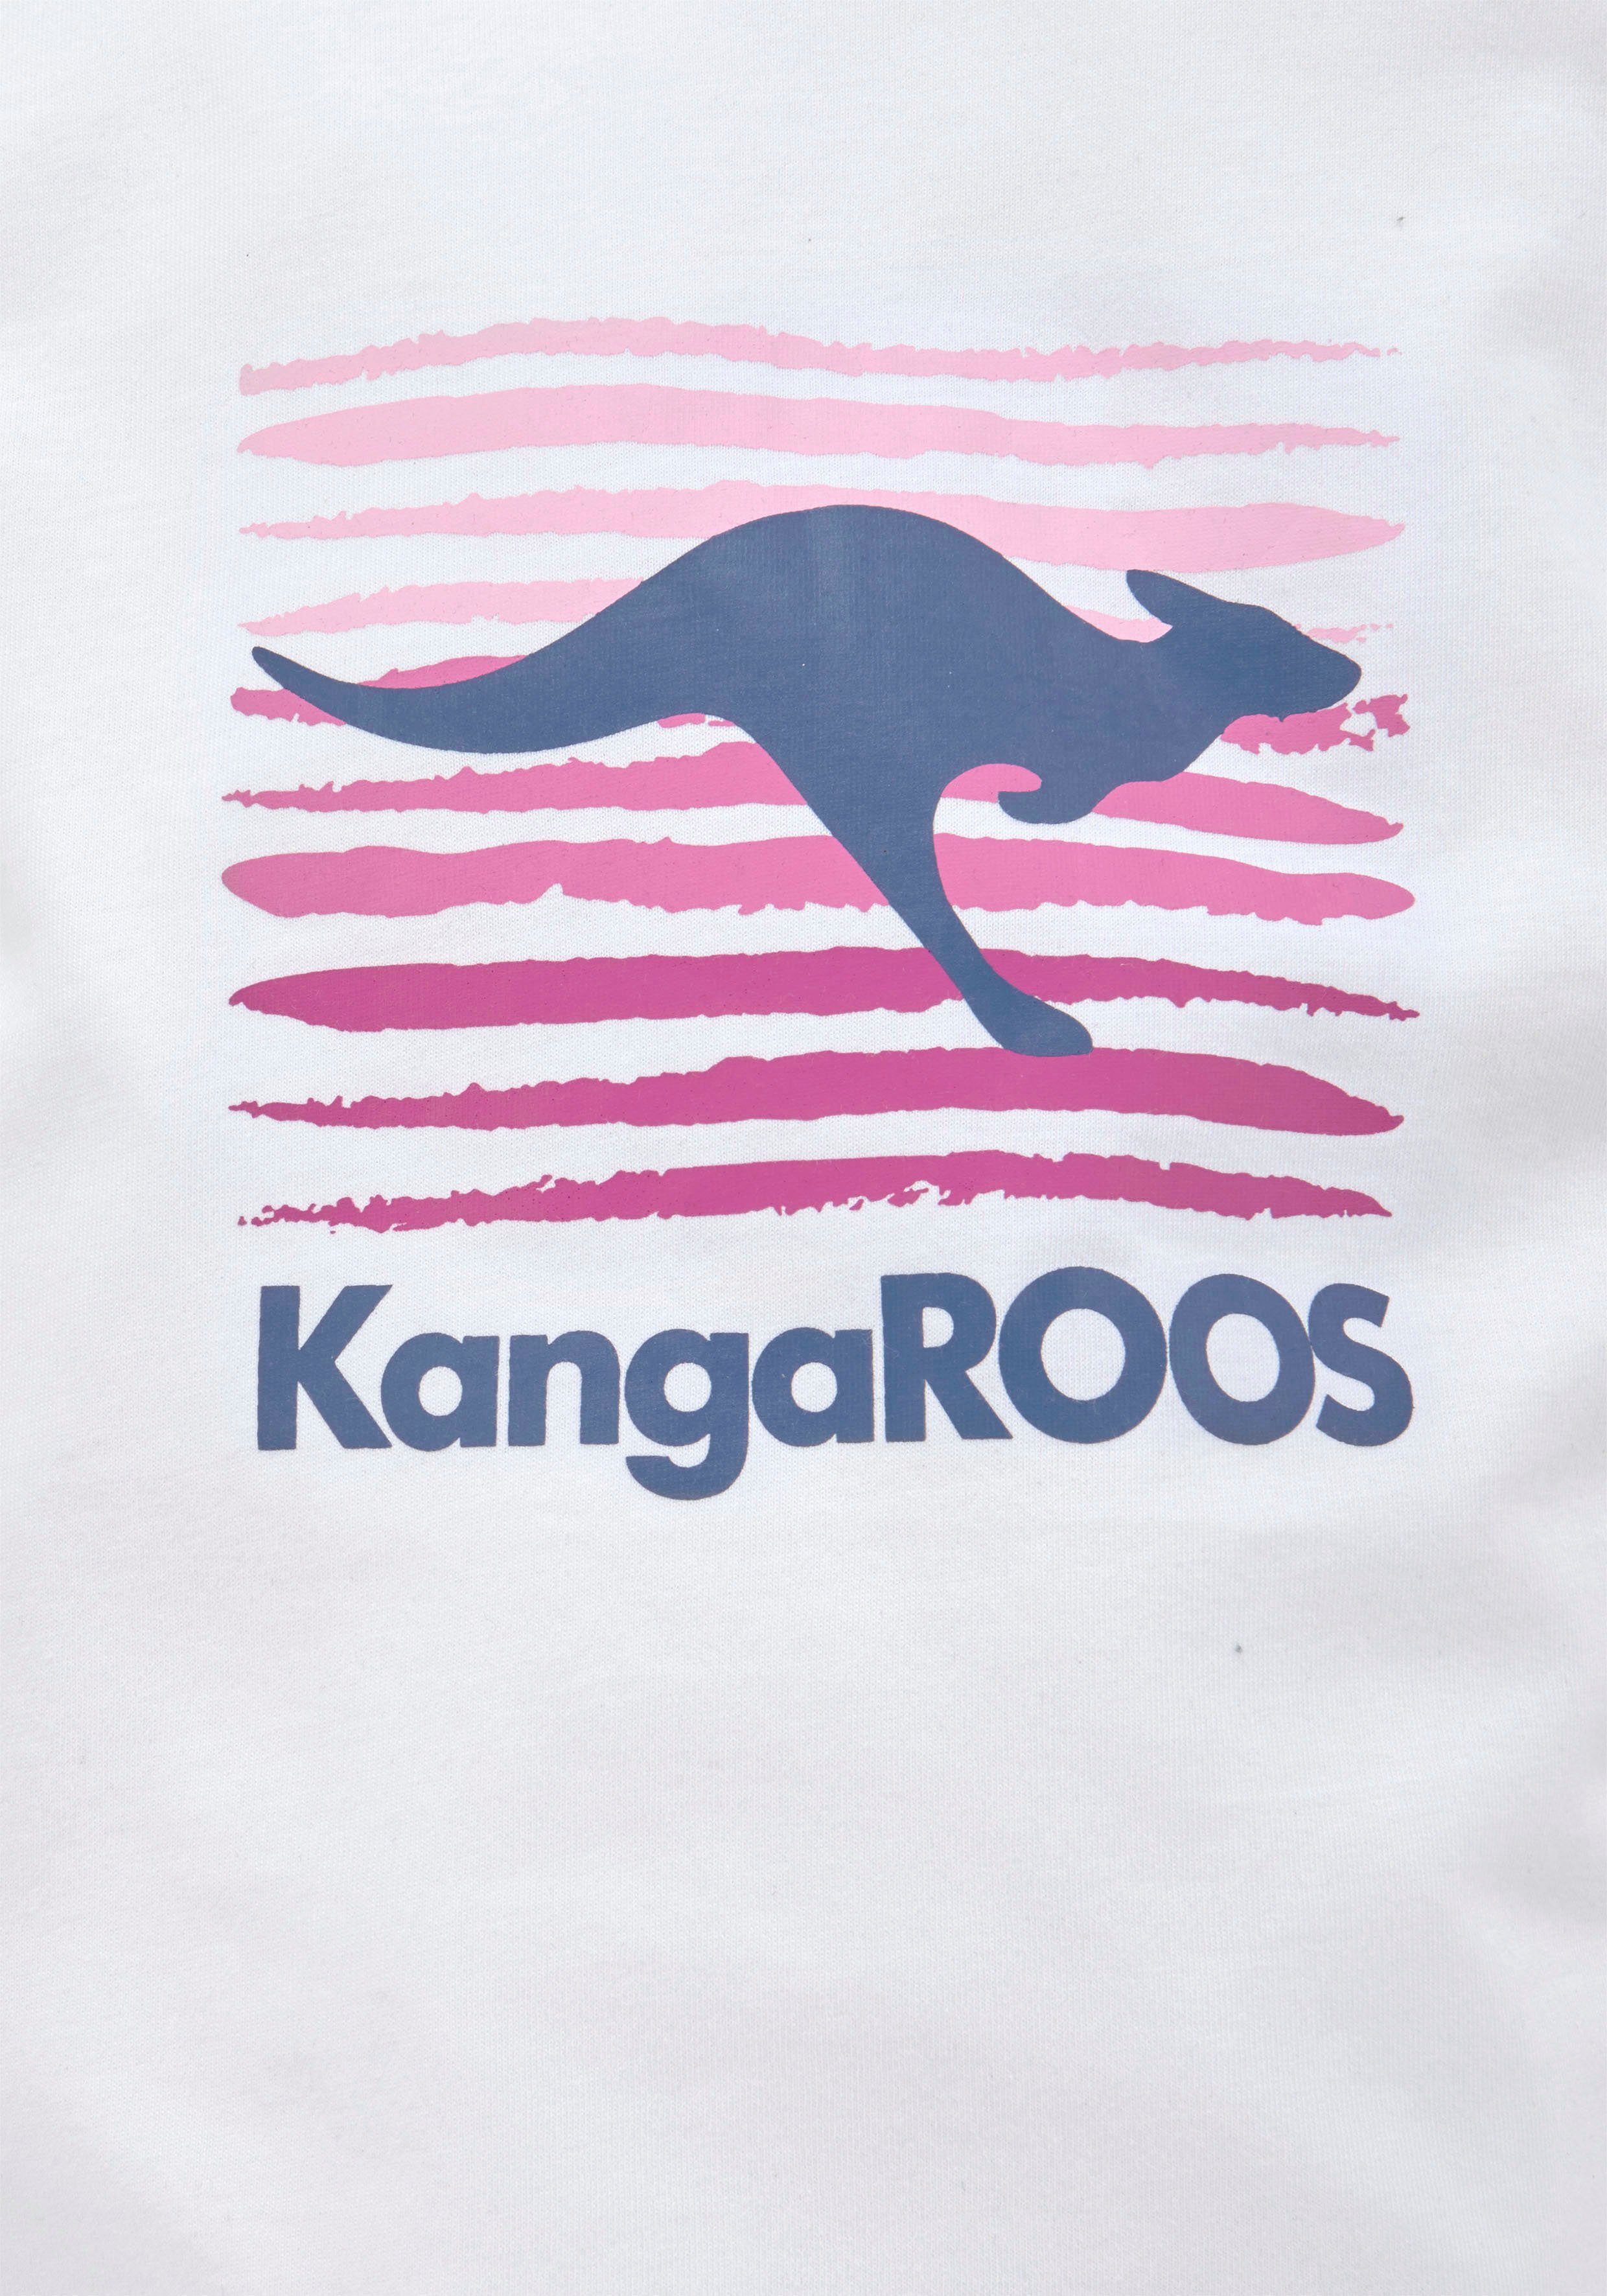 Logodruck T-Shirt KangaROOS mit großem